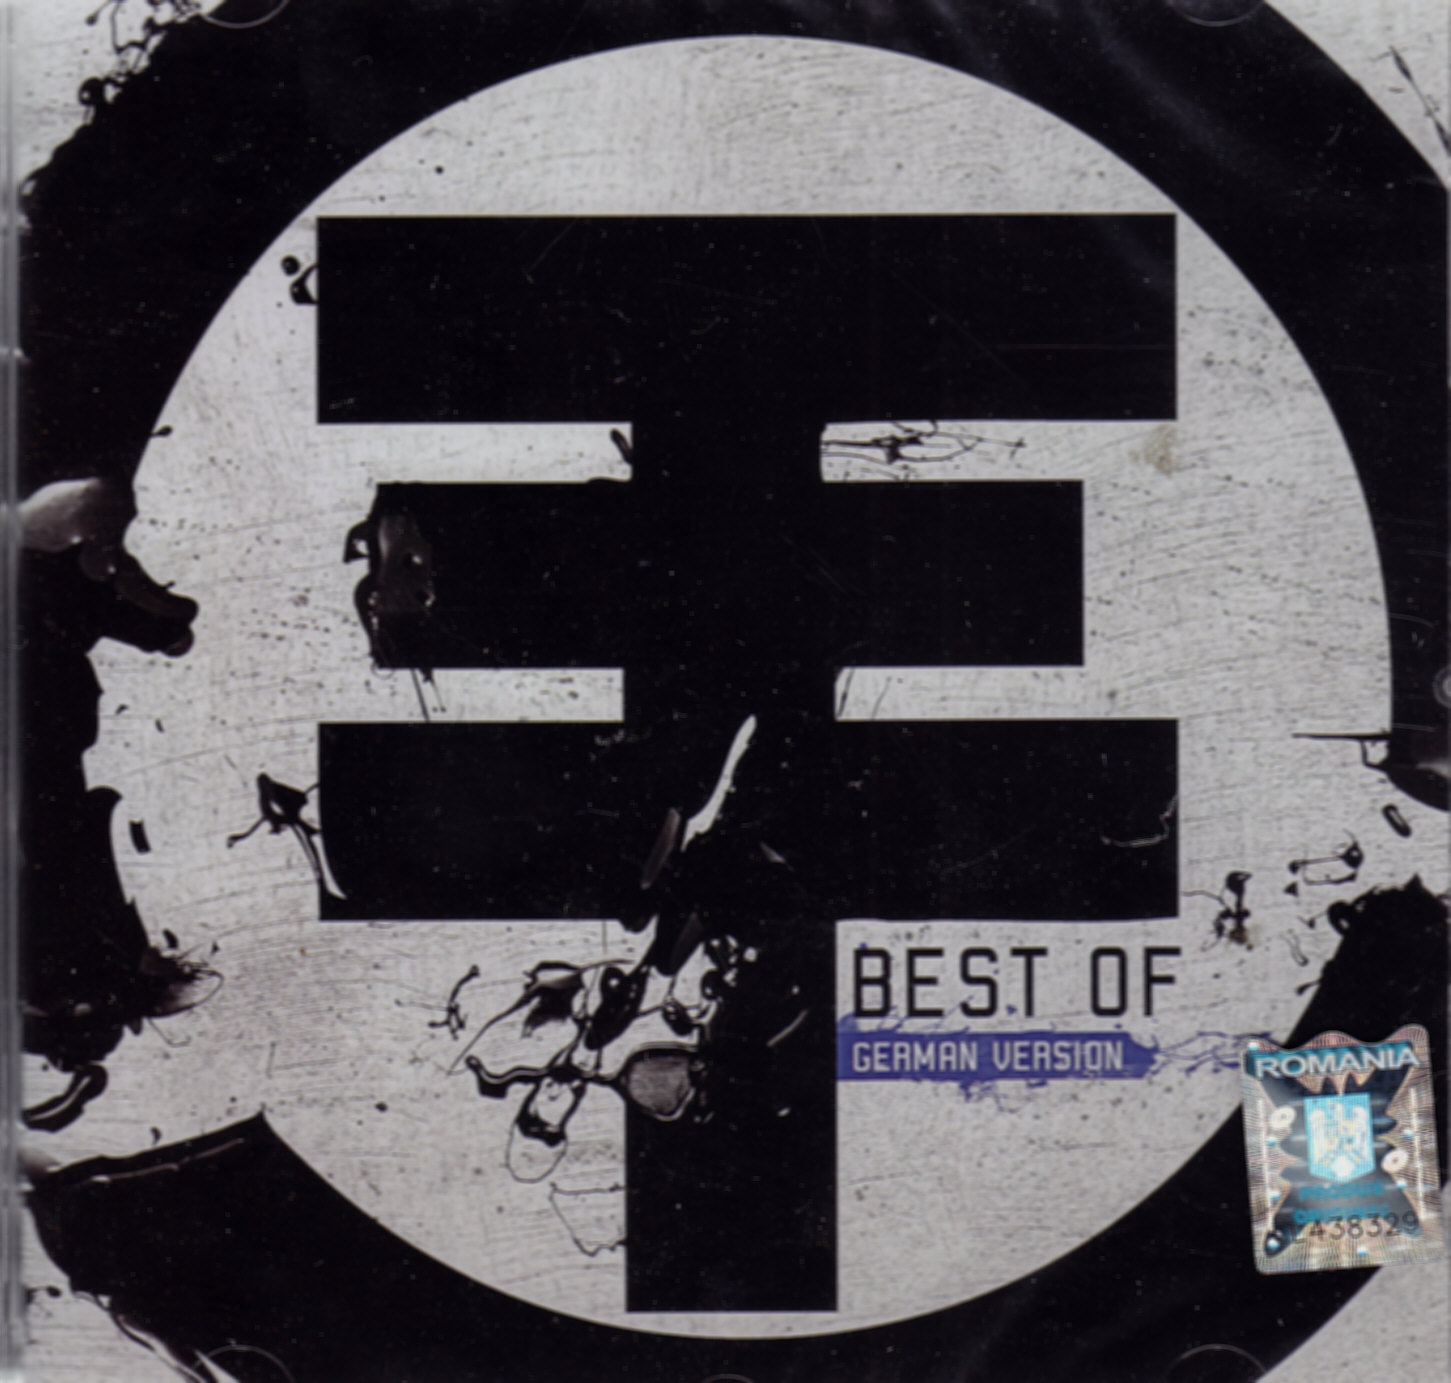 Cd Tokio Hotel - Best Of - German Version